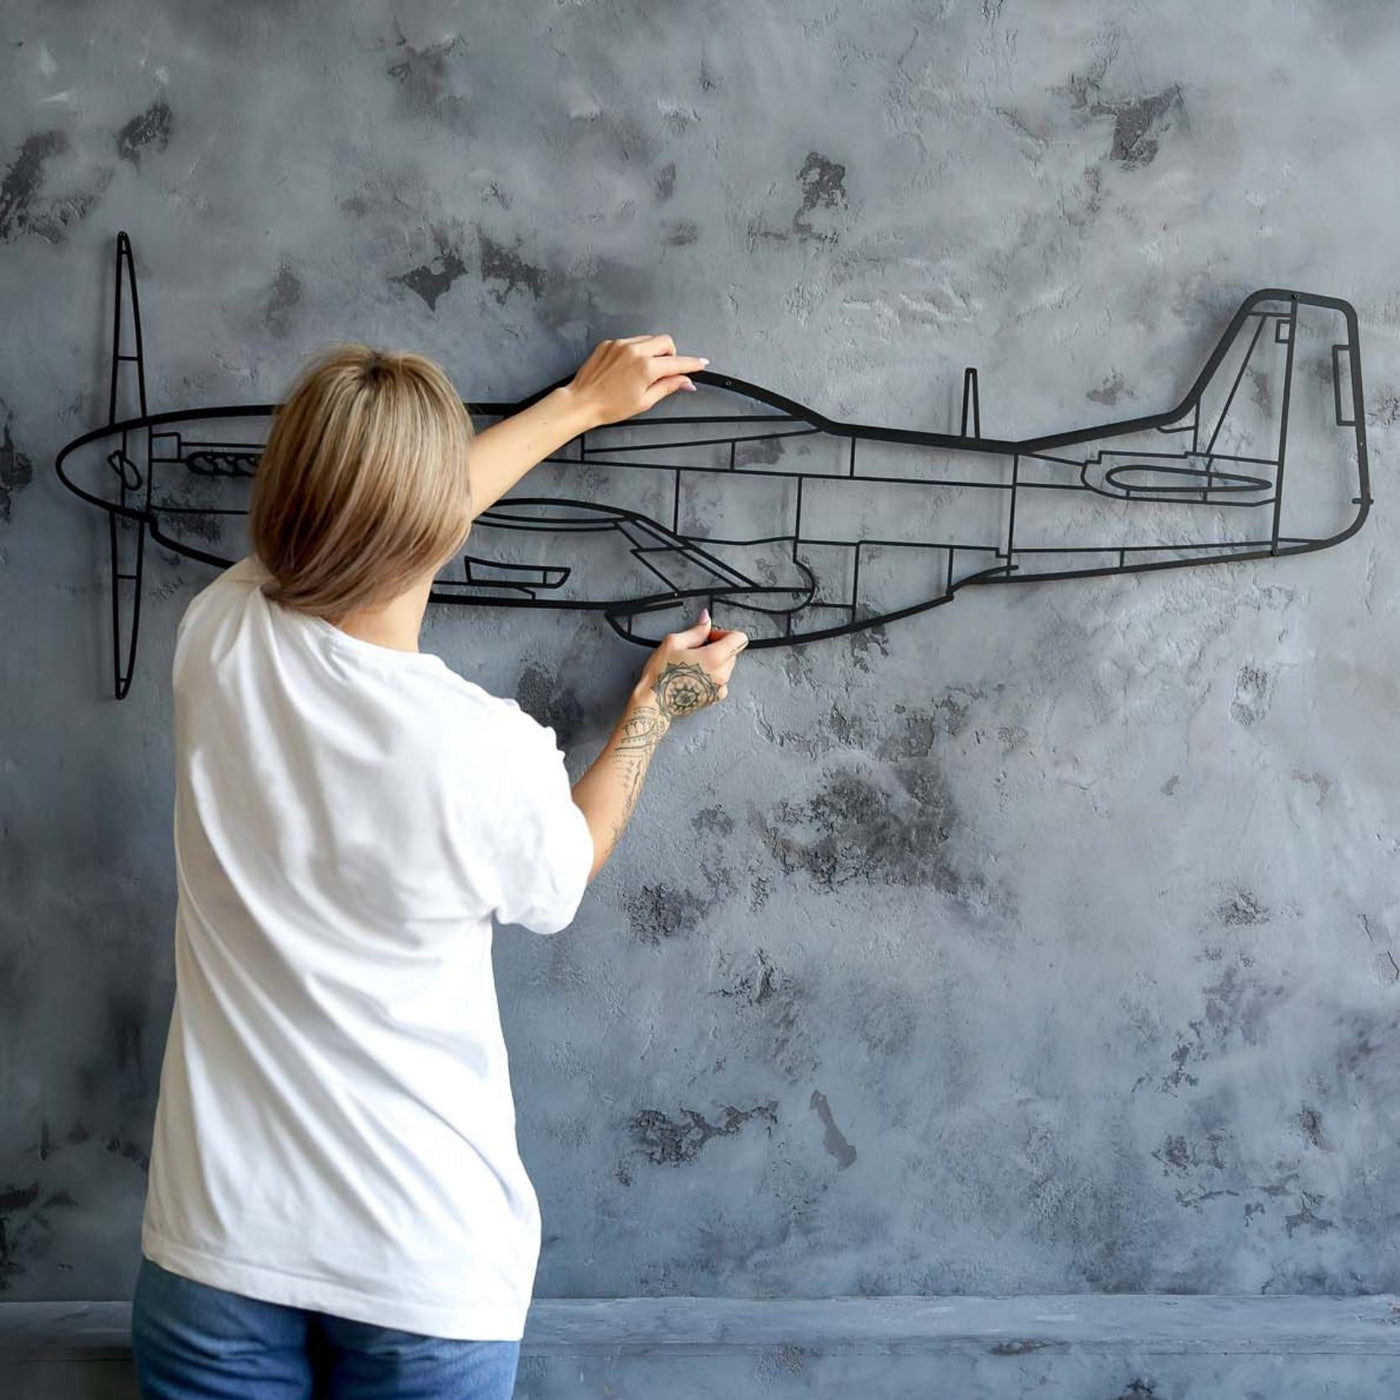 A-1H Skyraider Silhouette Metal Wall Art